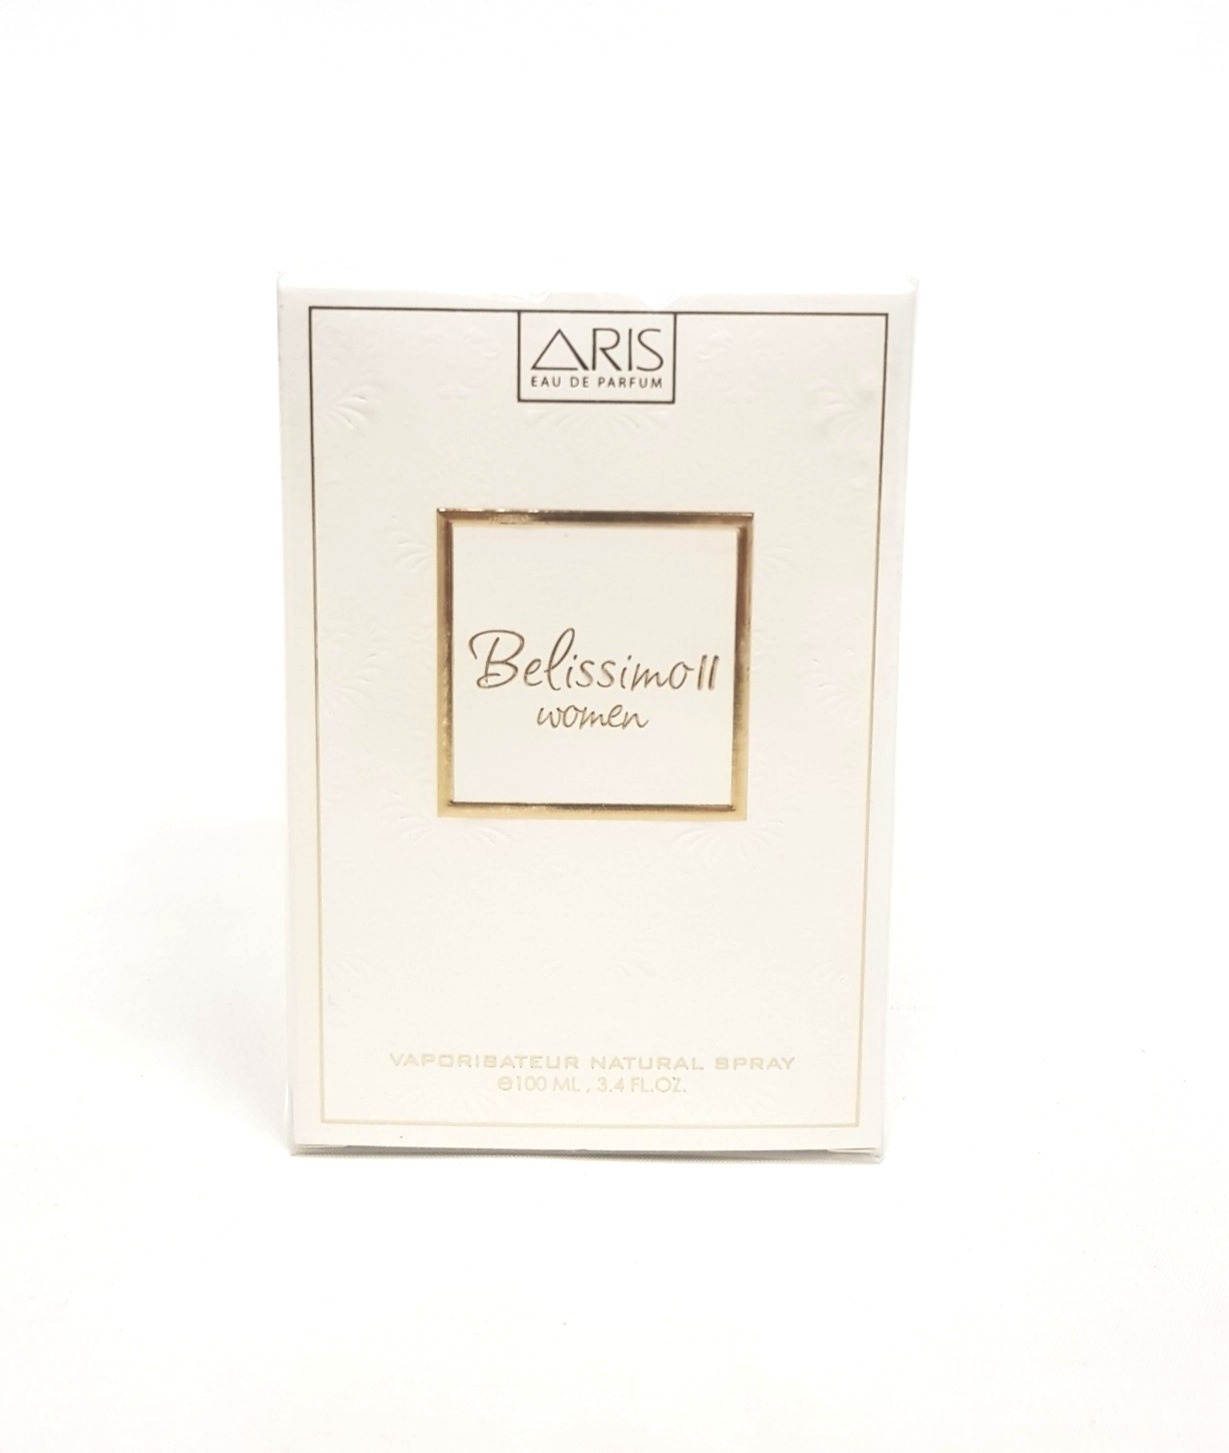 ادکلن زنانه Belissimo-II by Aris Eau de Parfum, 100 ML کد 409054